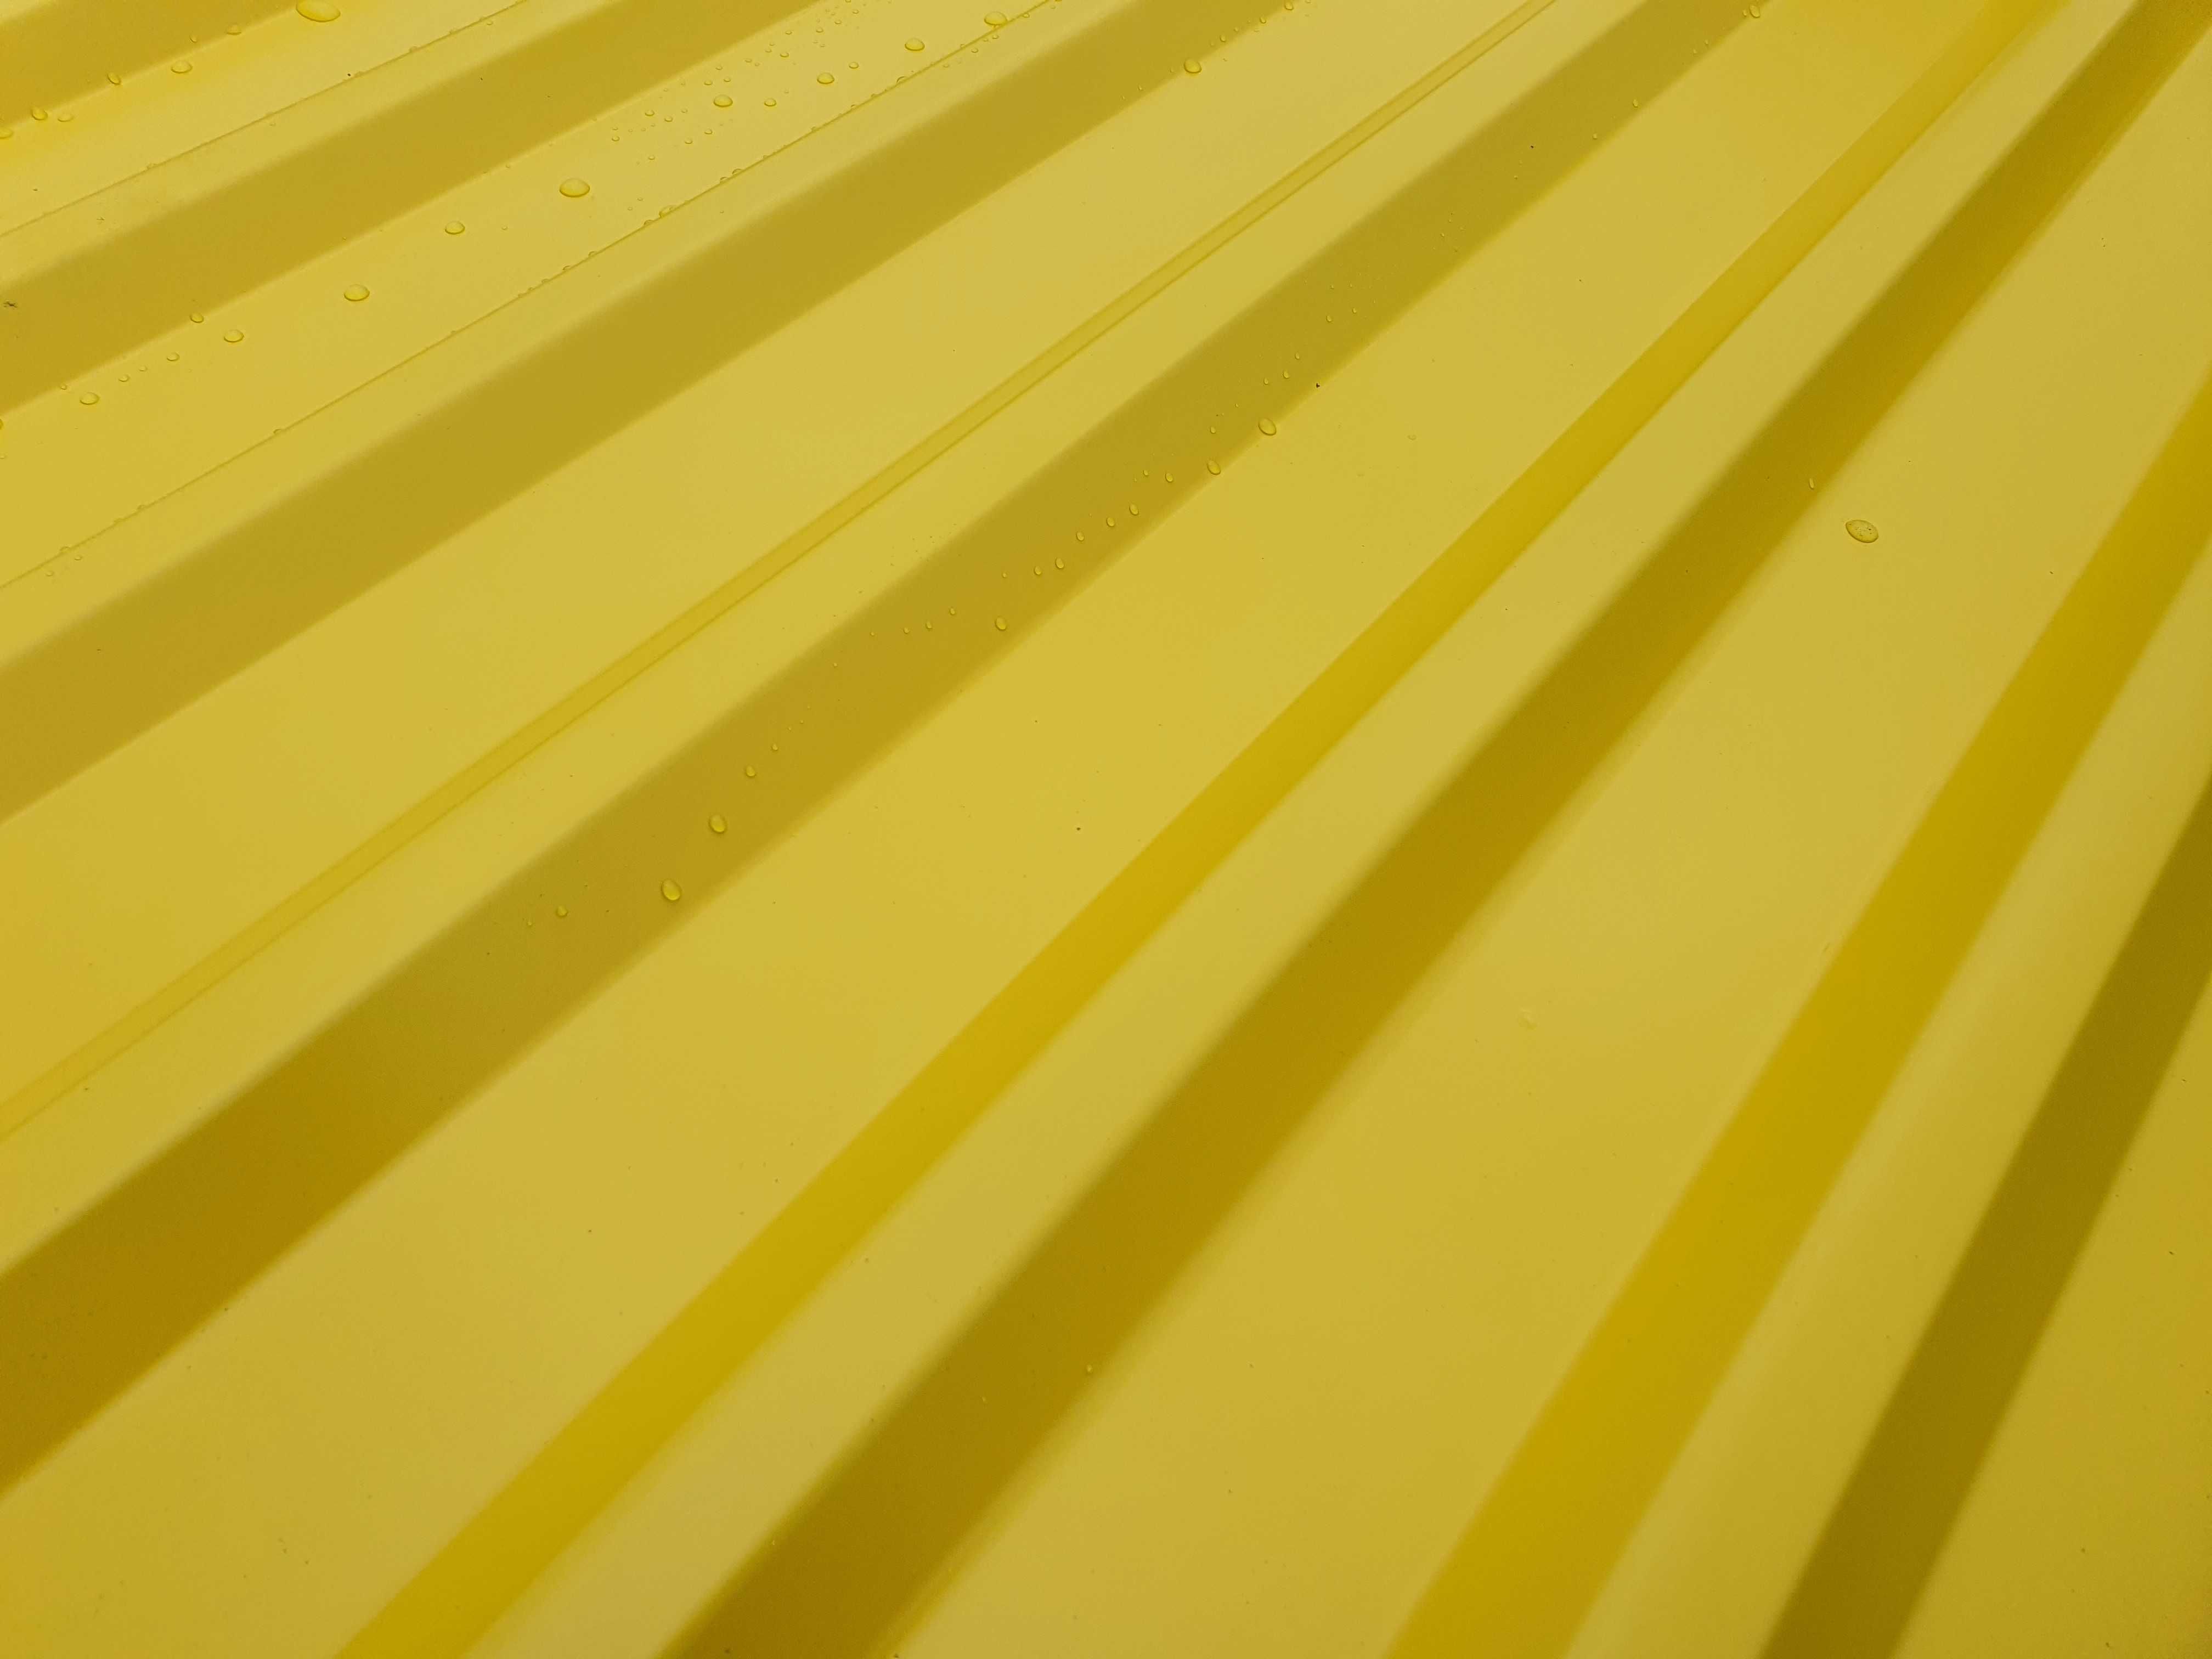 Nowa żółta blacha, ładny kolor, długość 2100mm, trapez T18